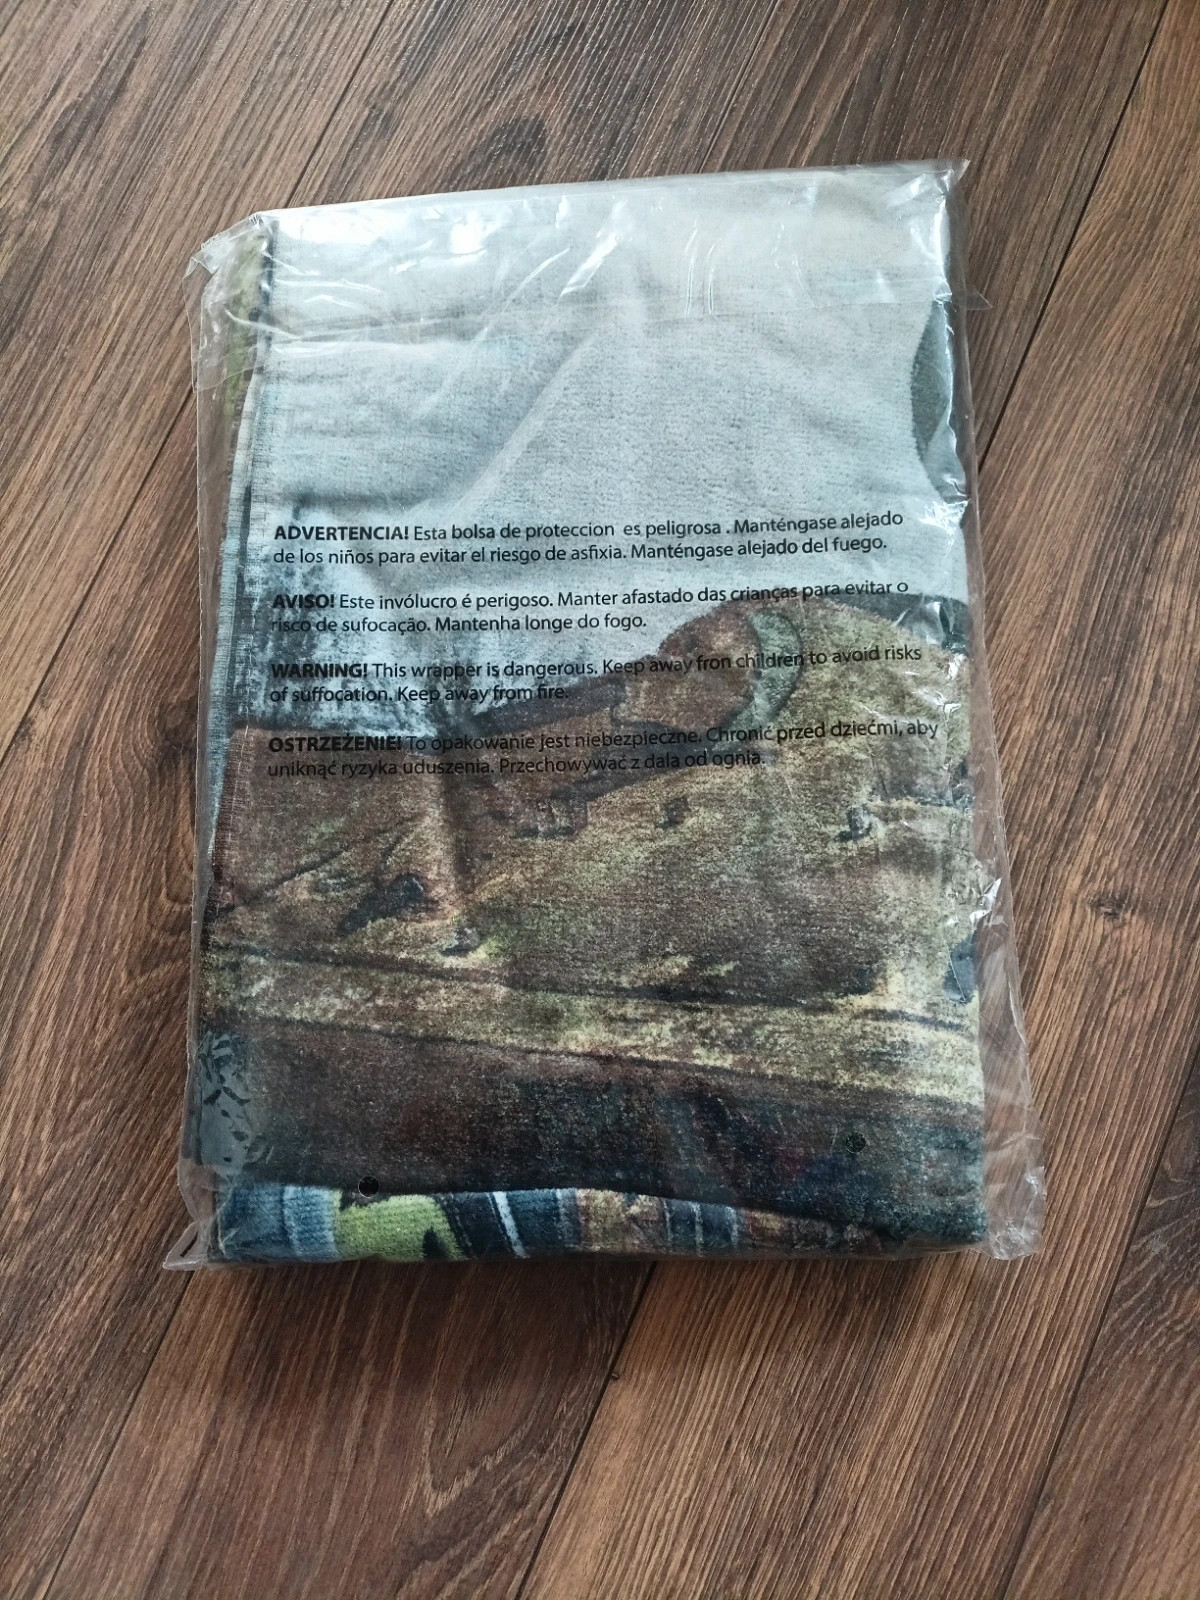 Ręcznik bawełniany 70x140